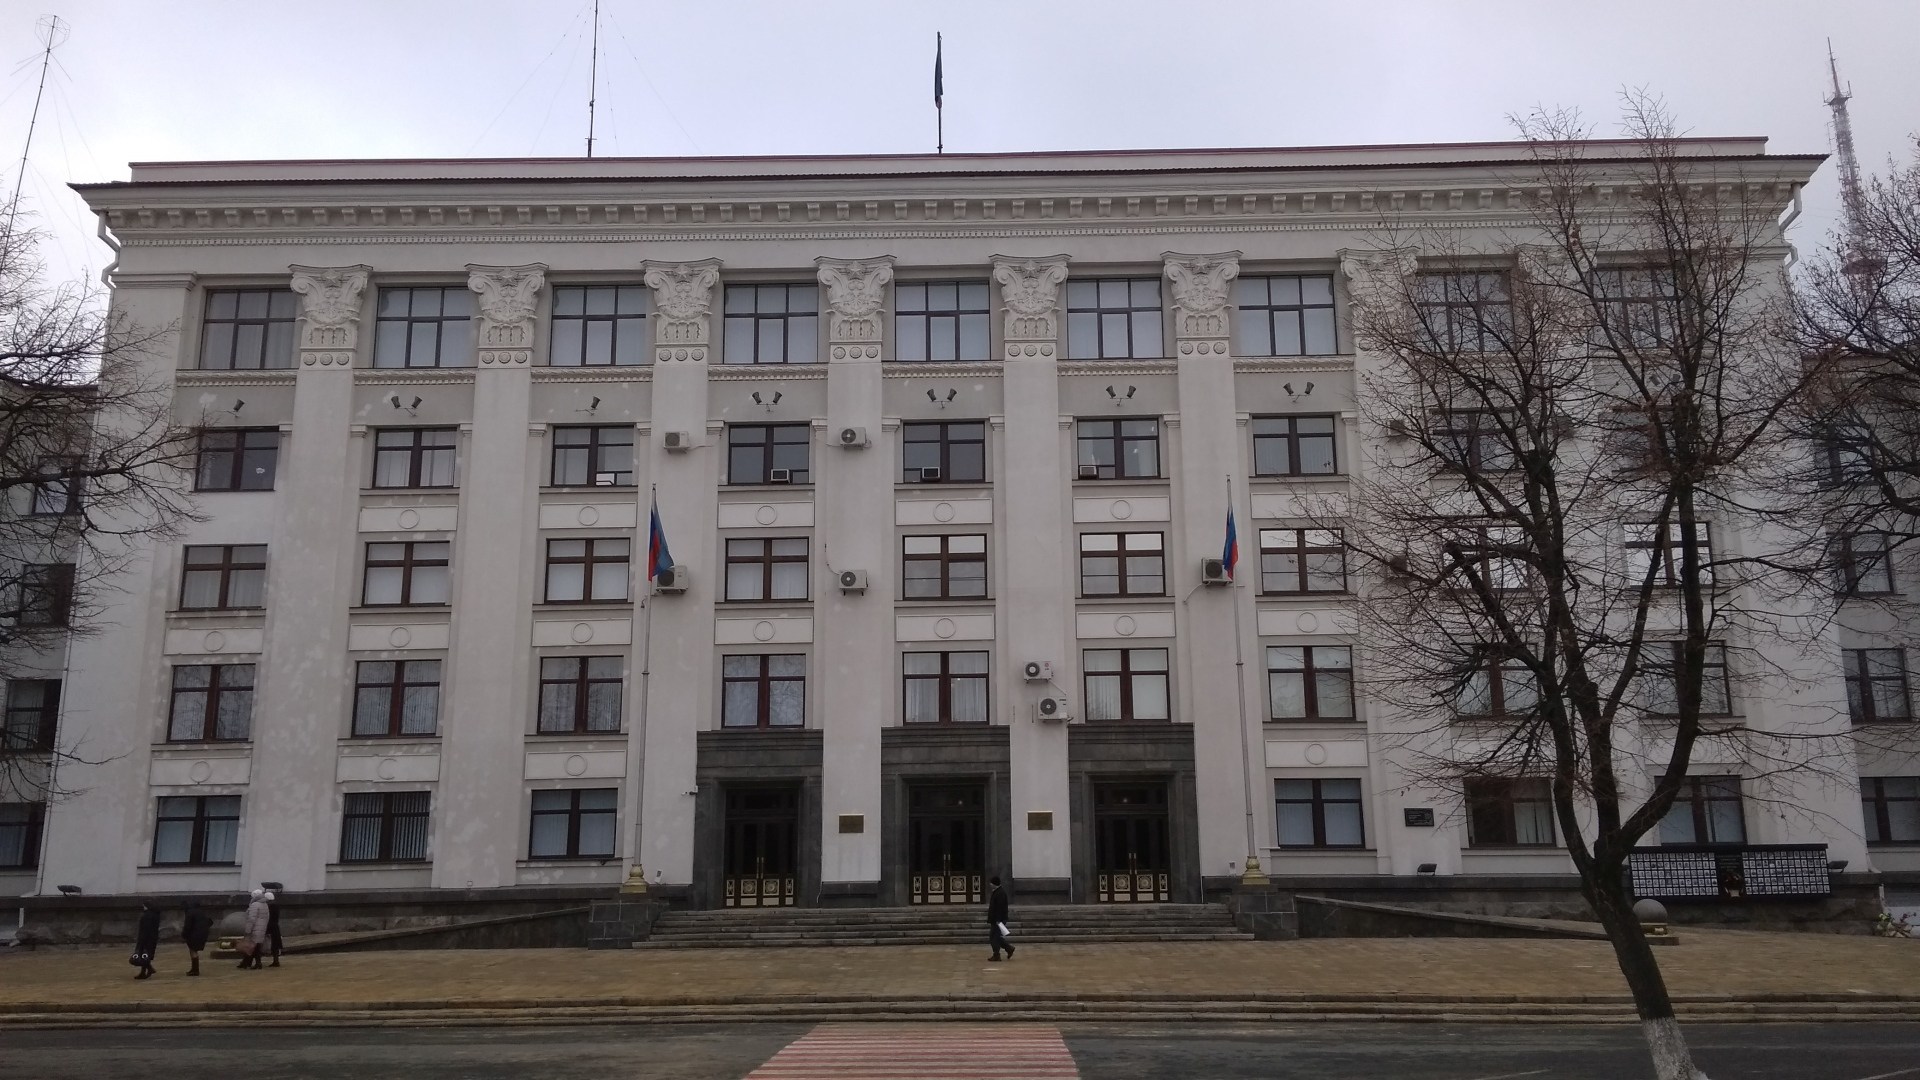 Луганск. Здание администрации. Белые точки следы от ракетного удара